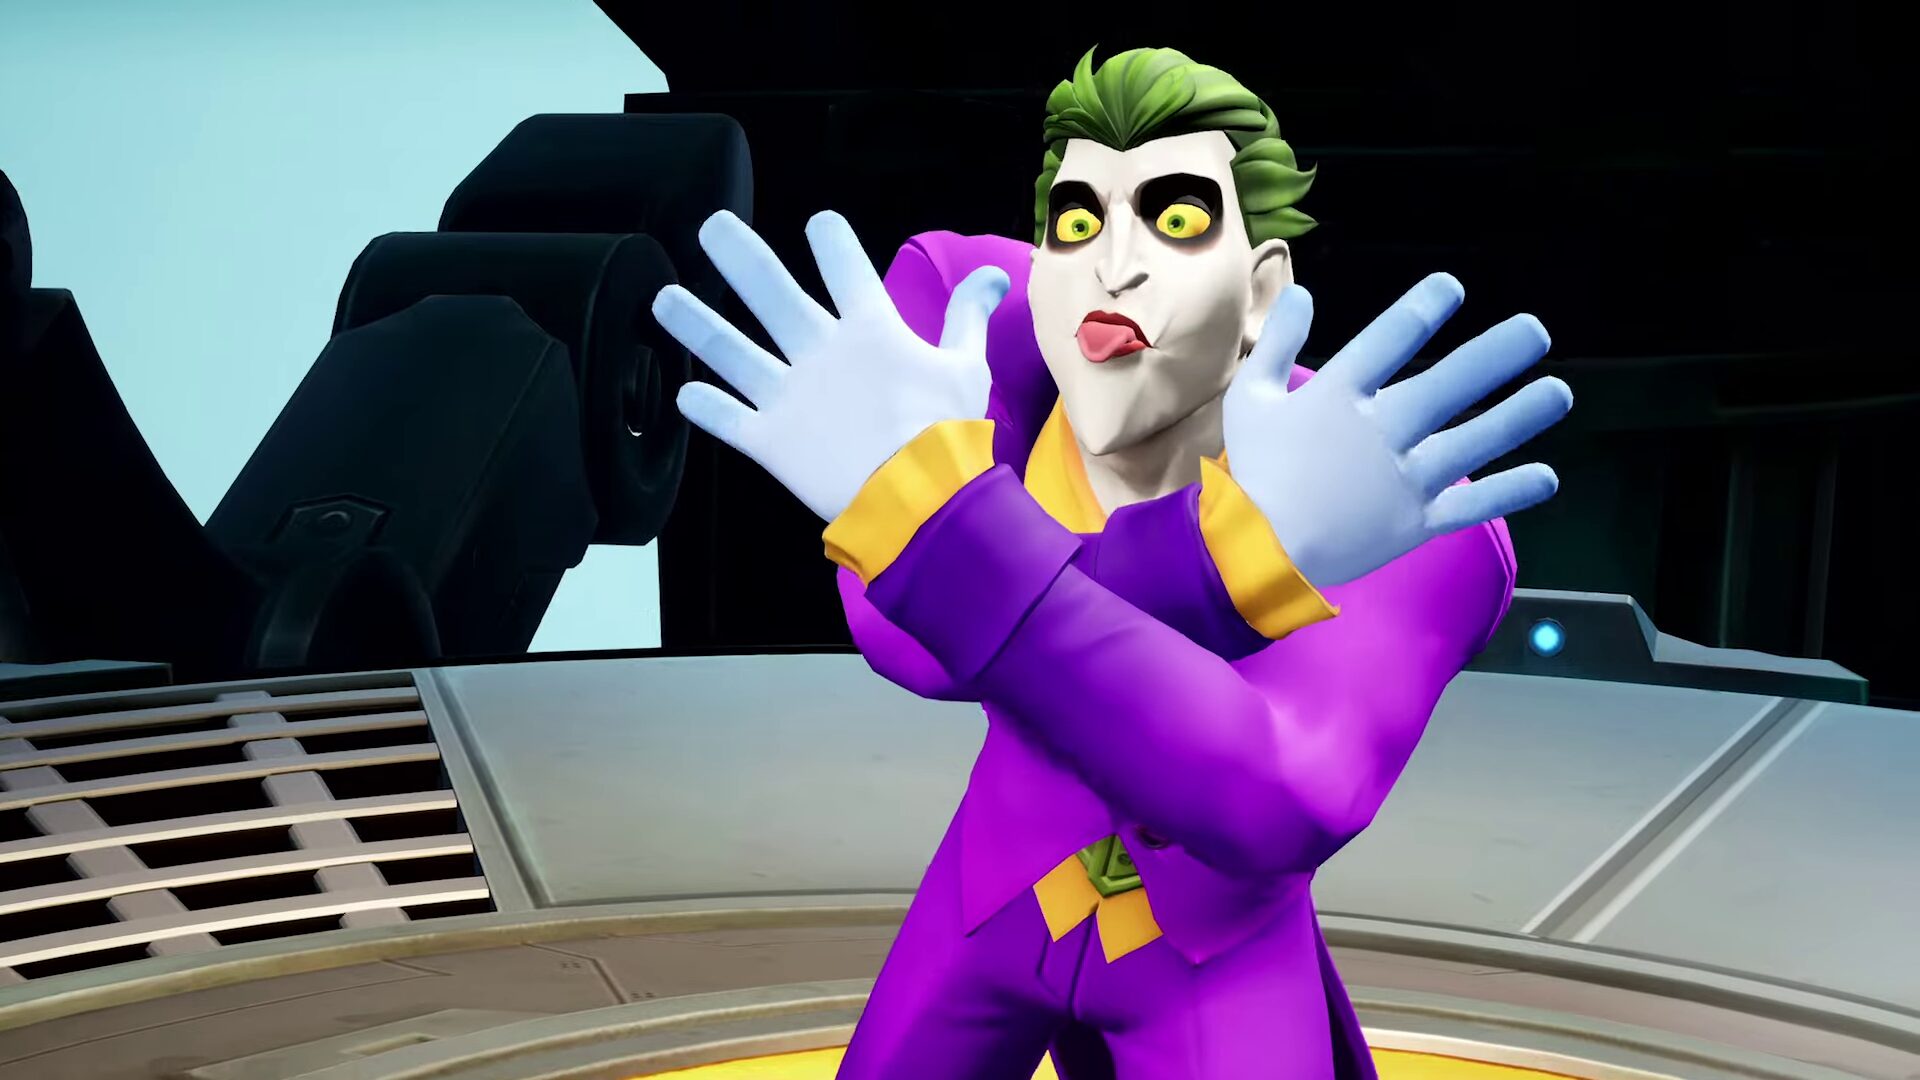 MultiVersus - The Joker gameplay trailer - Gematsu